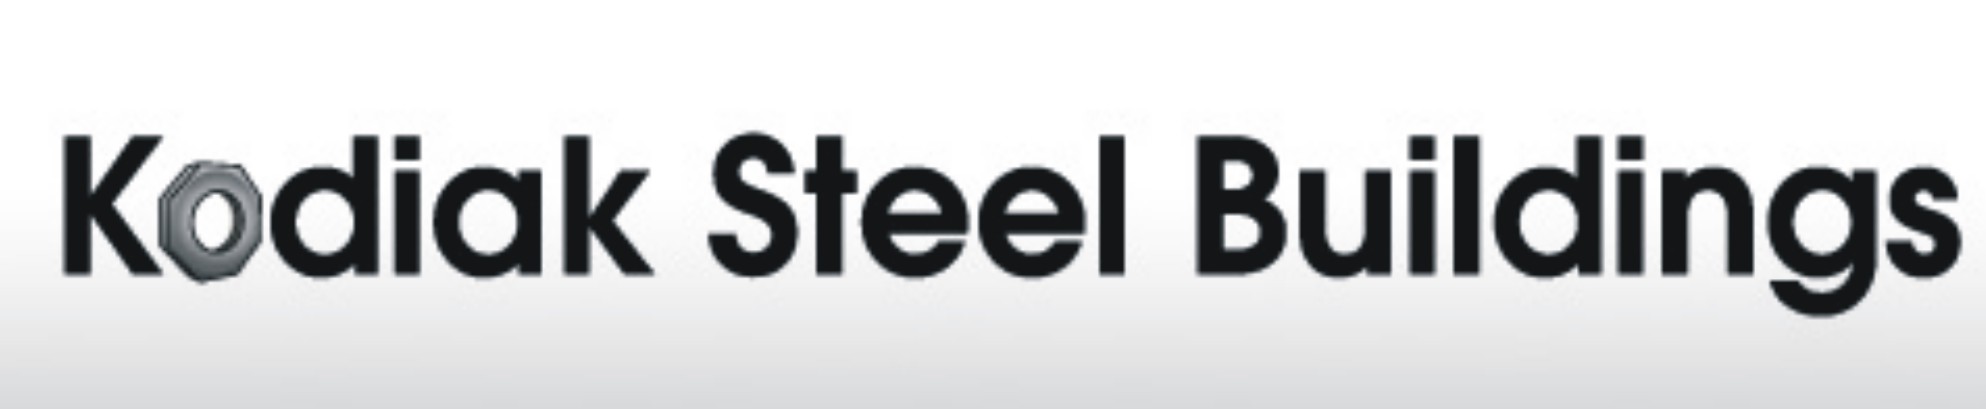 Kodiak Steel Buildings - Pre Fabricated Metal Buildings